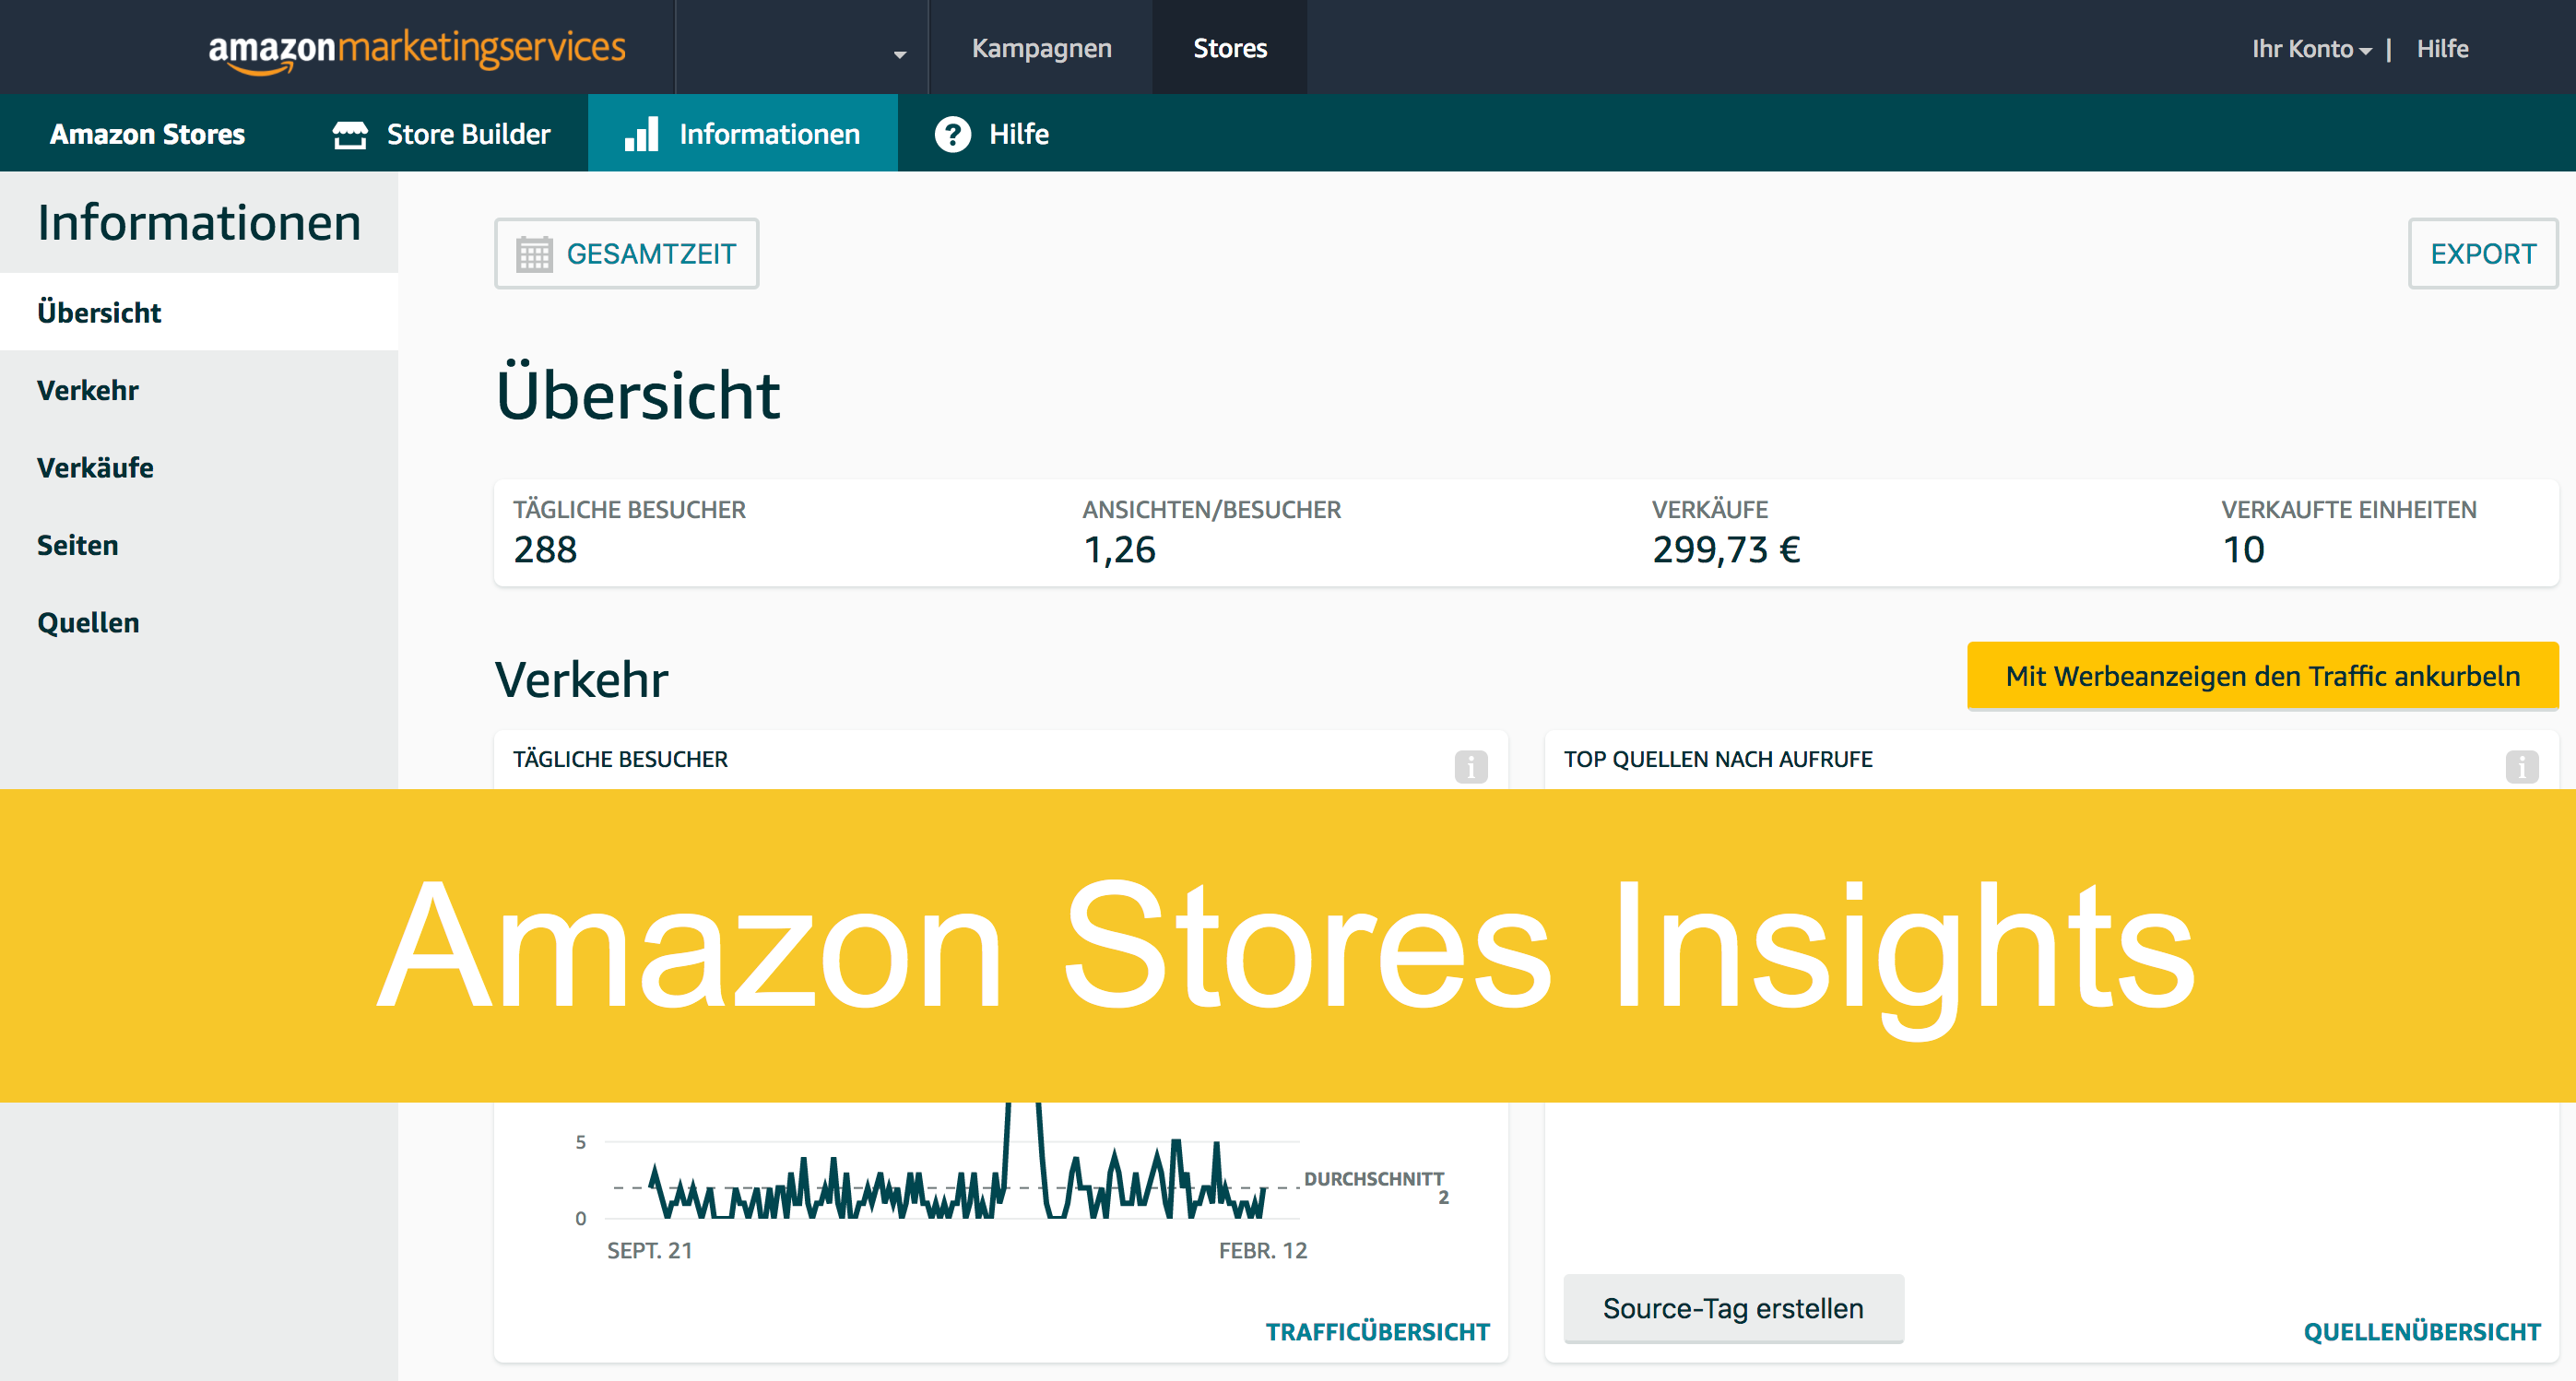 Amazon Stores Insights mit umfangreichen Update bei den Berichten